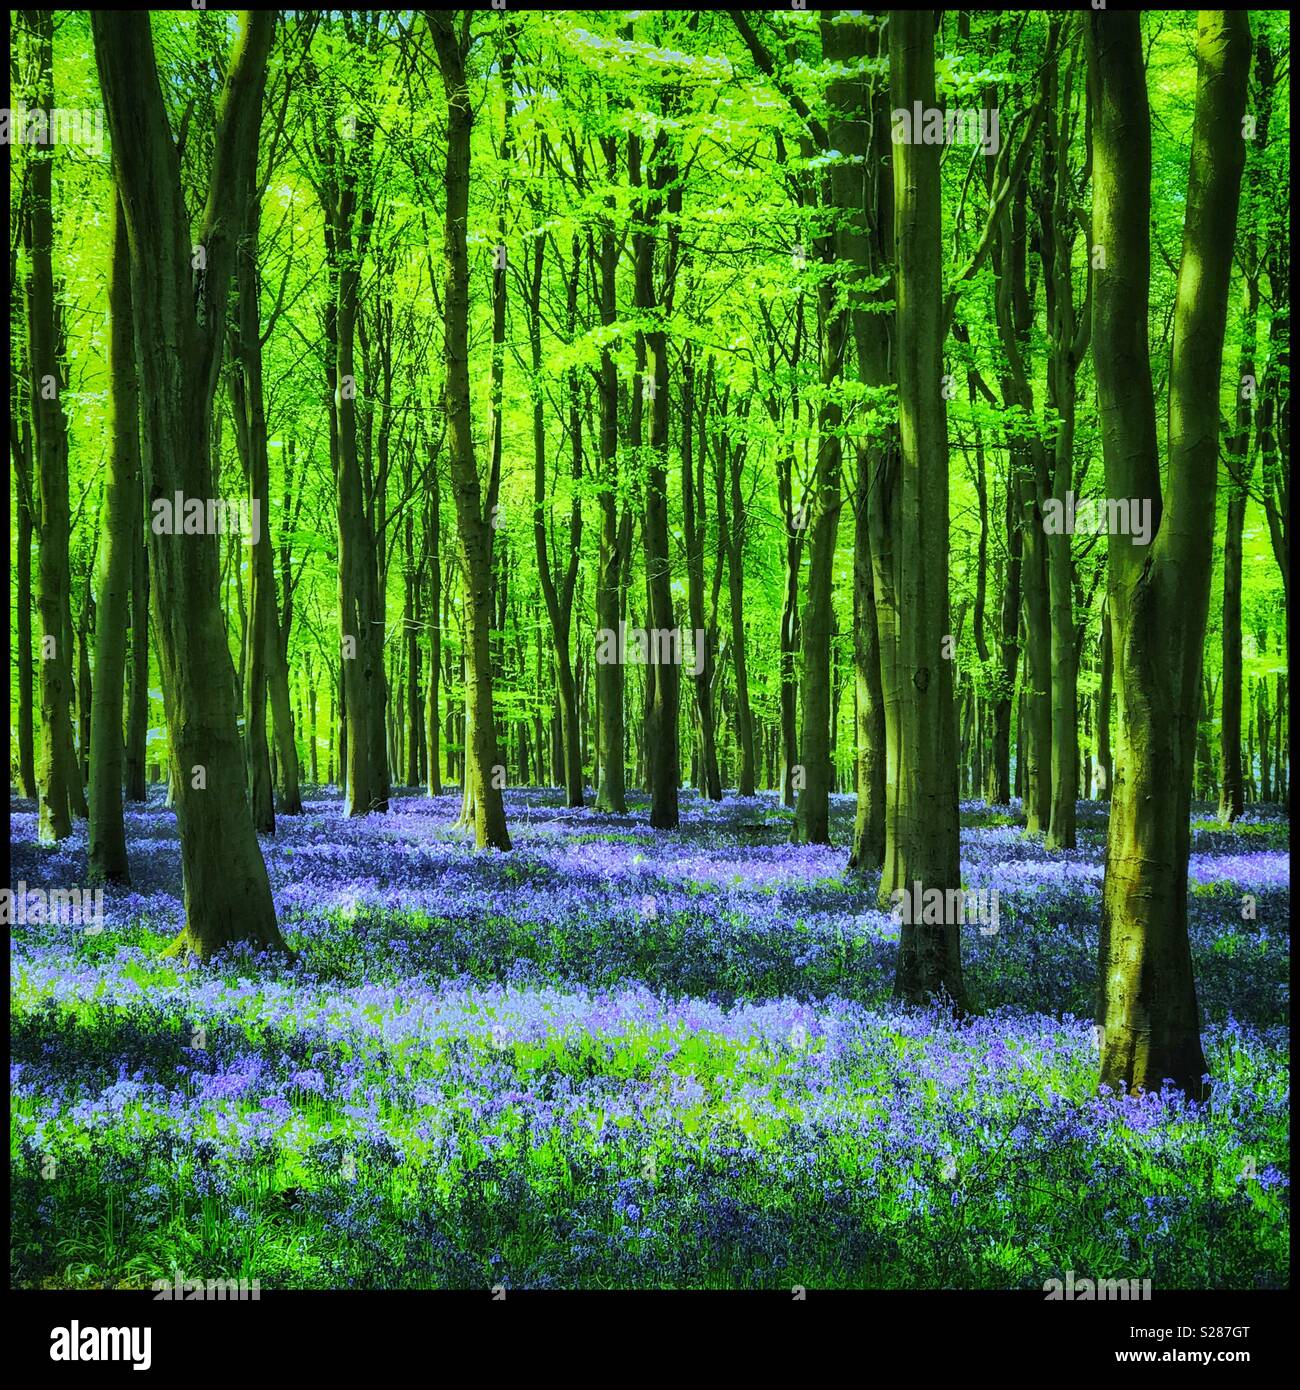 Una fantastica primavera scena di bosco in Inghilterra - Il Bluebells sono in piena fioritura creando un tappeto di viola. The Bluebell flower (Hyacinthoides non Scripta) è stato votato il Regno Unito fiori preferiti. Foto Stock